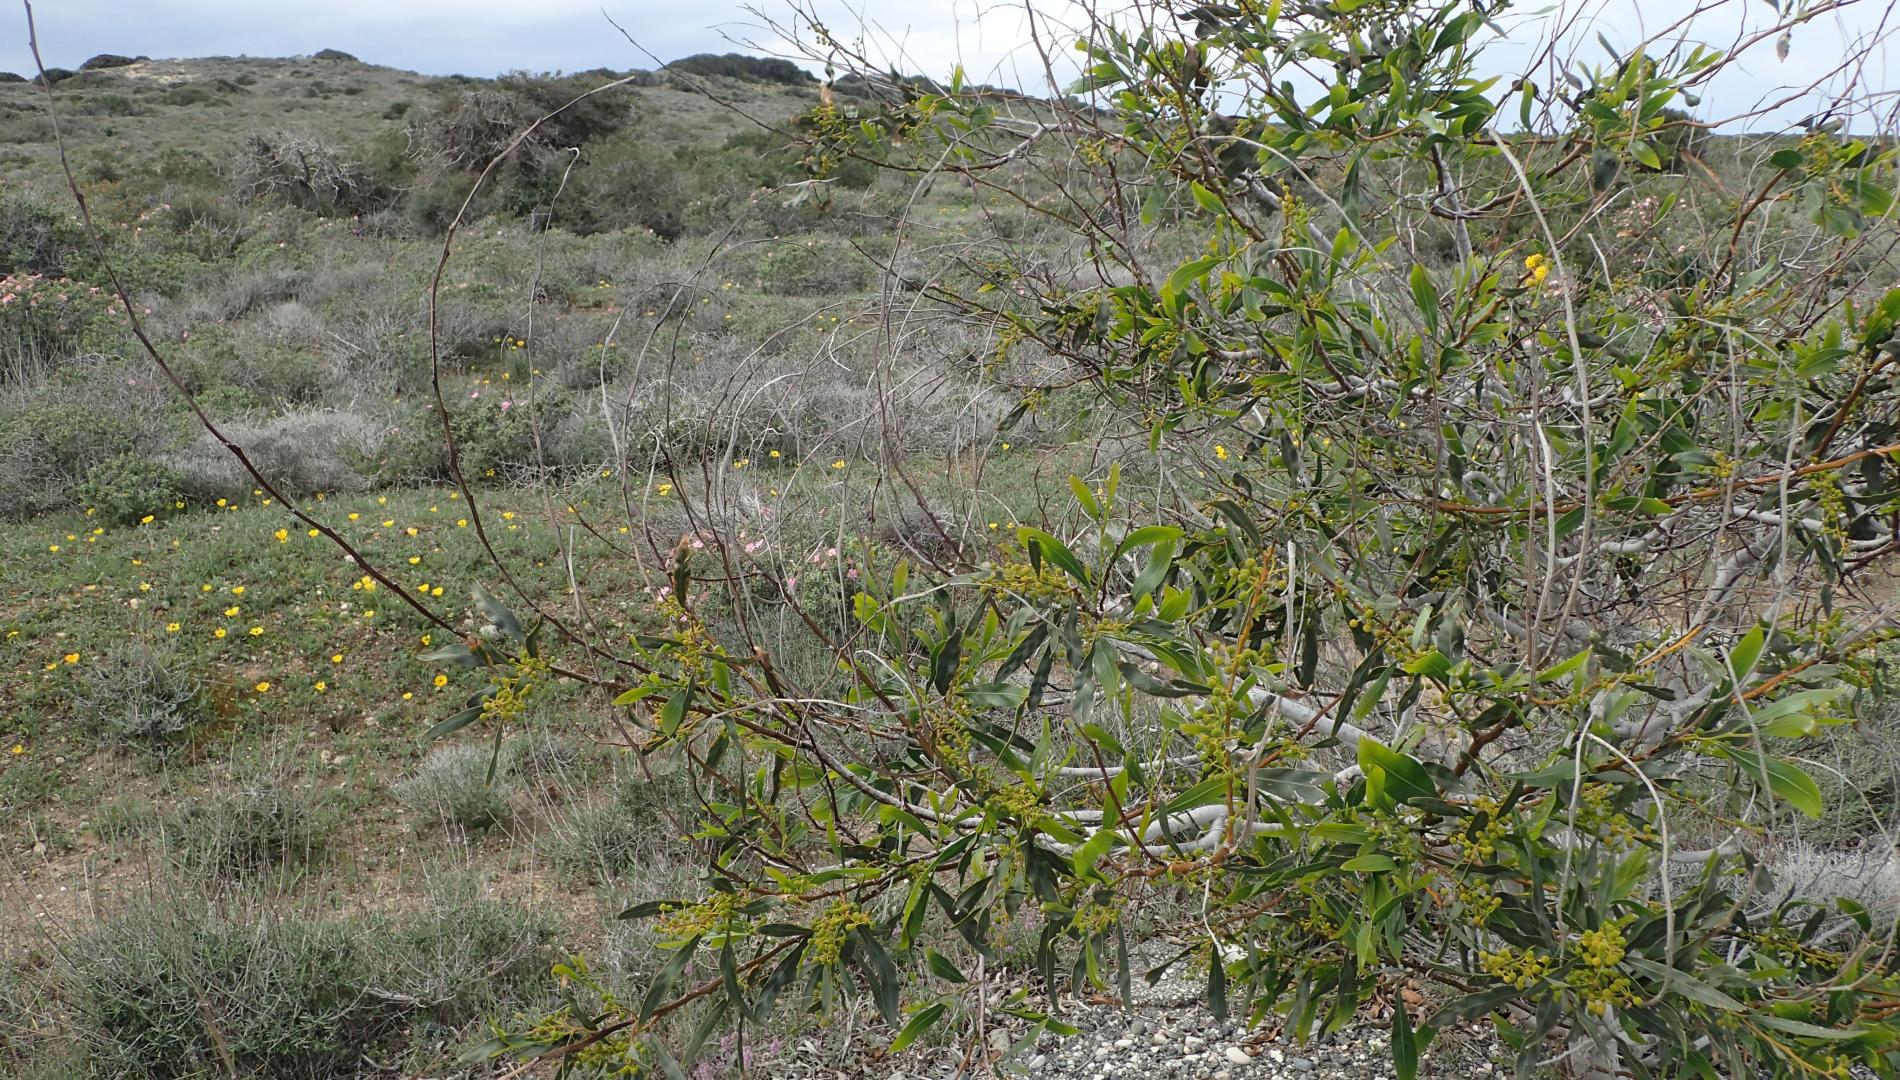 Acacia saligna and phrygana